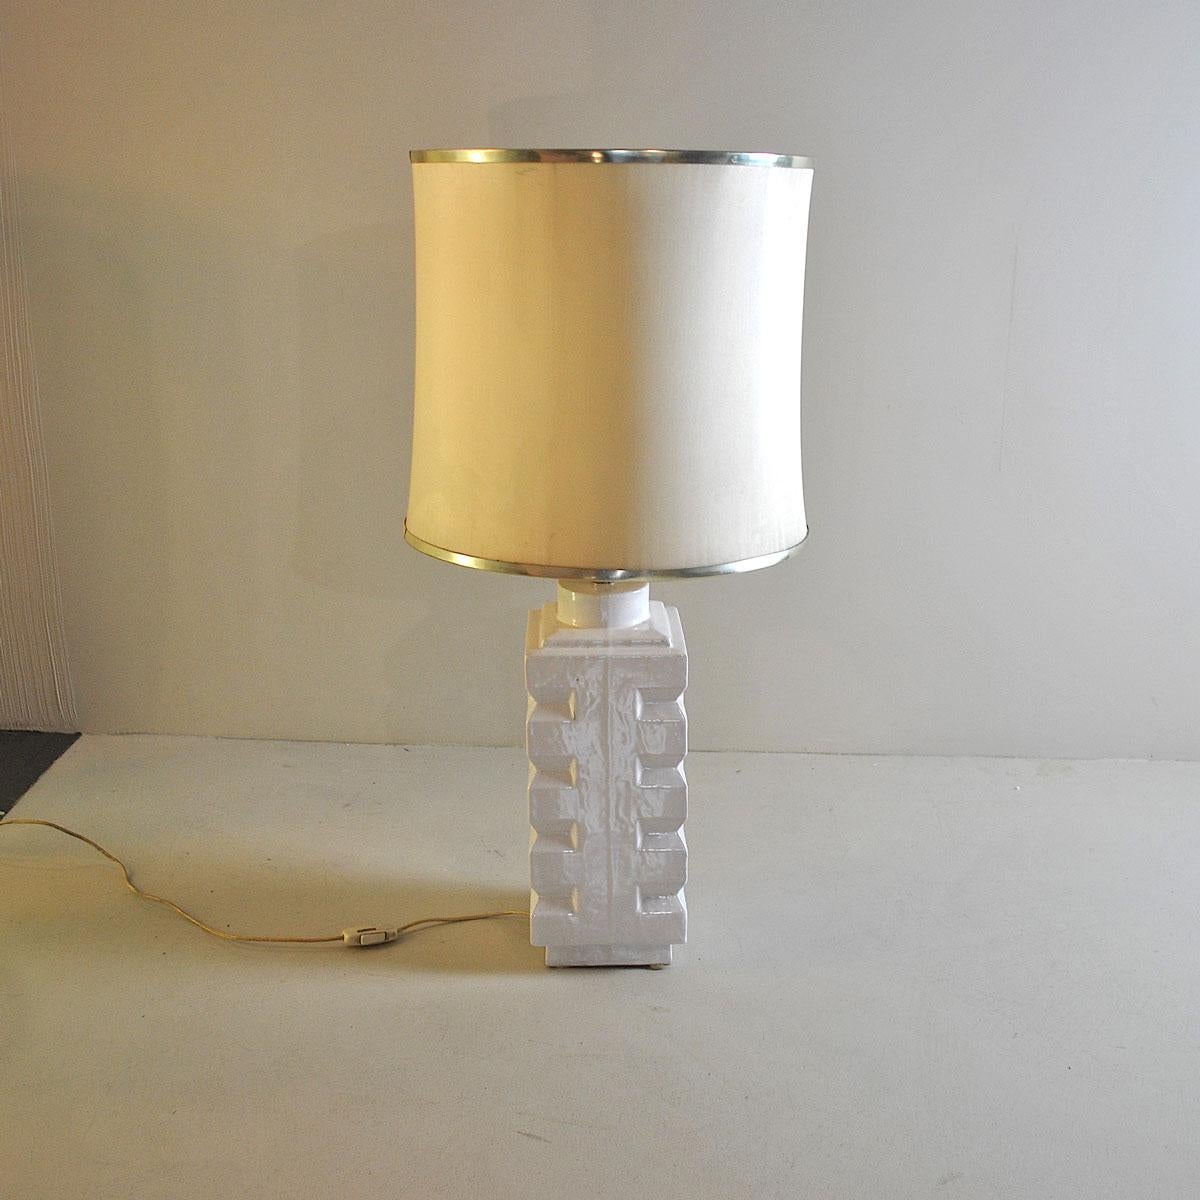 Lampe italienne des années 1970 en céramique blanche.

La lampe est vendue sans l'abat-jour sur la photo, mais il peut être demandé dans la forme, les tailles et les couleurs à volonté avec un prix supplémentaire.